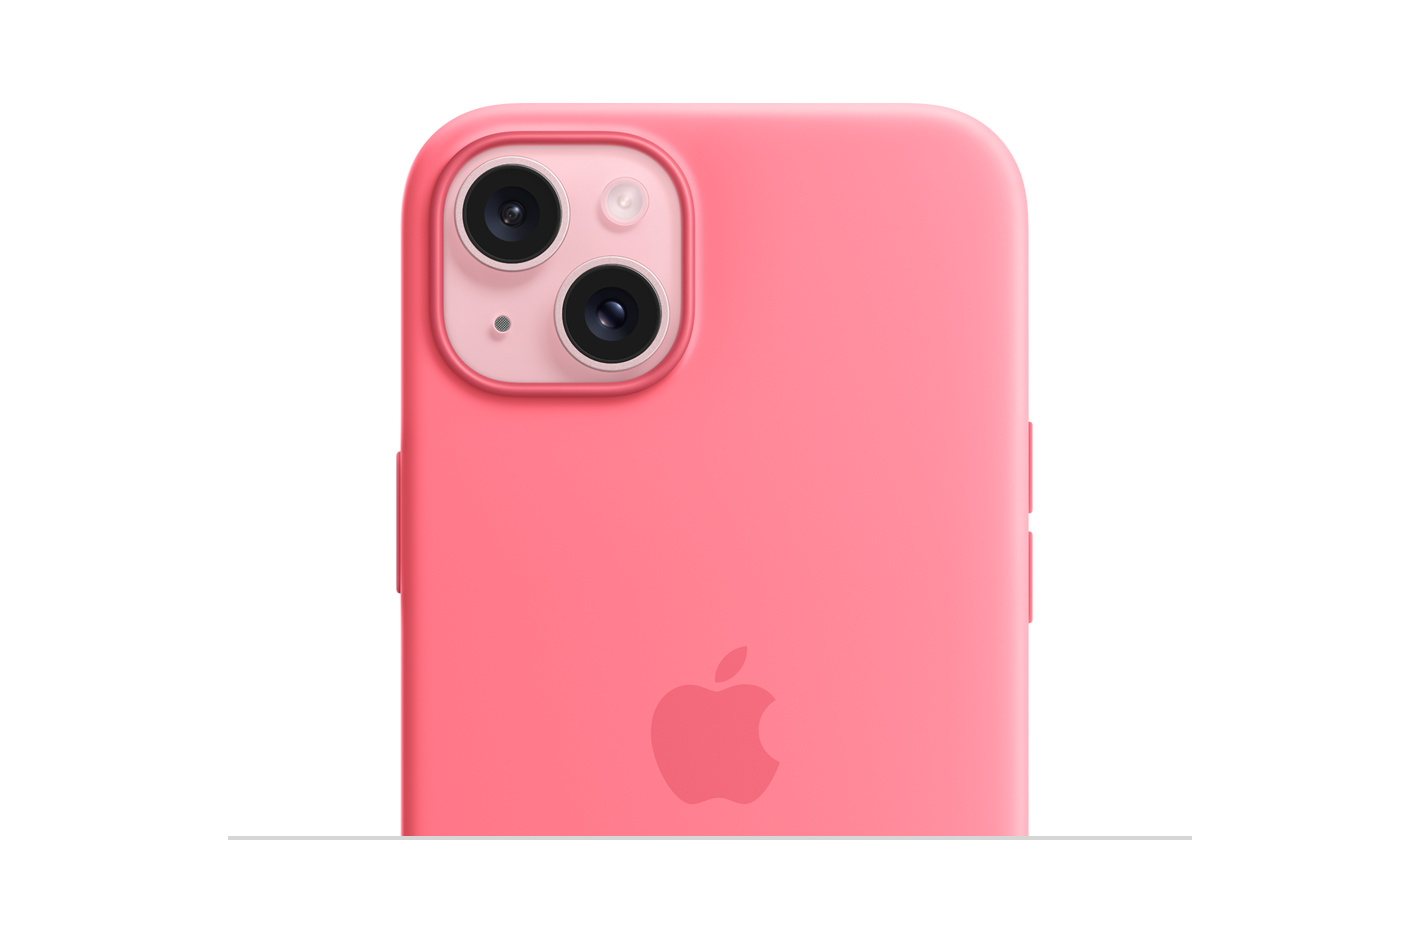 Carcasa de silicona rosada con MagSafe, con el logo de Apple en el centro y puesta en un iPhone 15 rosado que se alcanza a apreciar a través del orificio para la cámara.